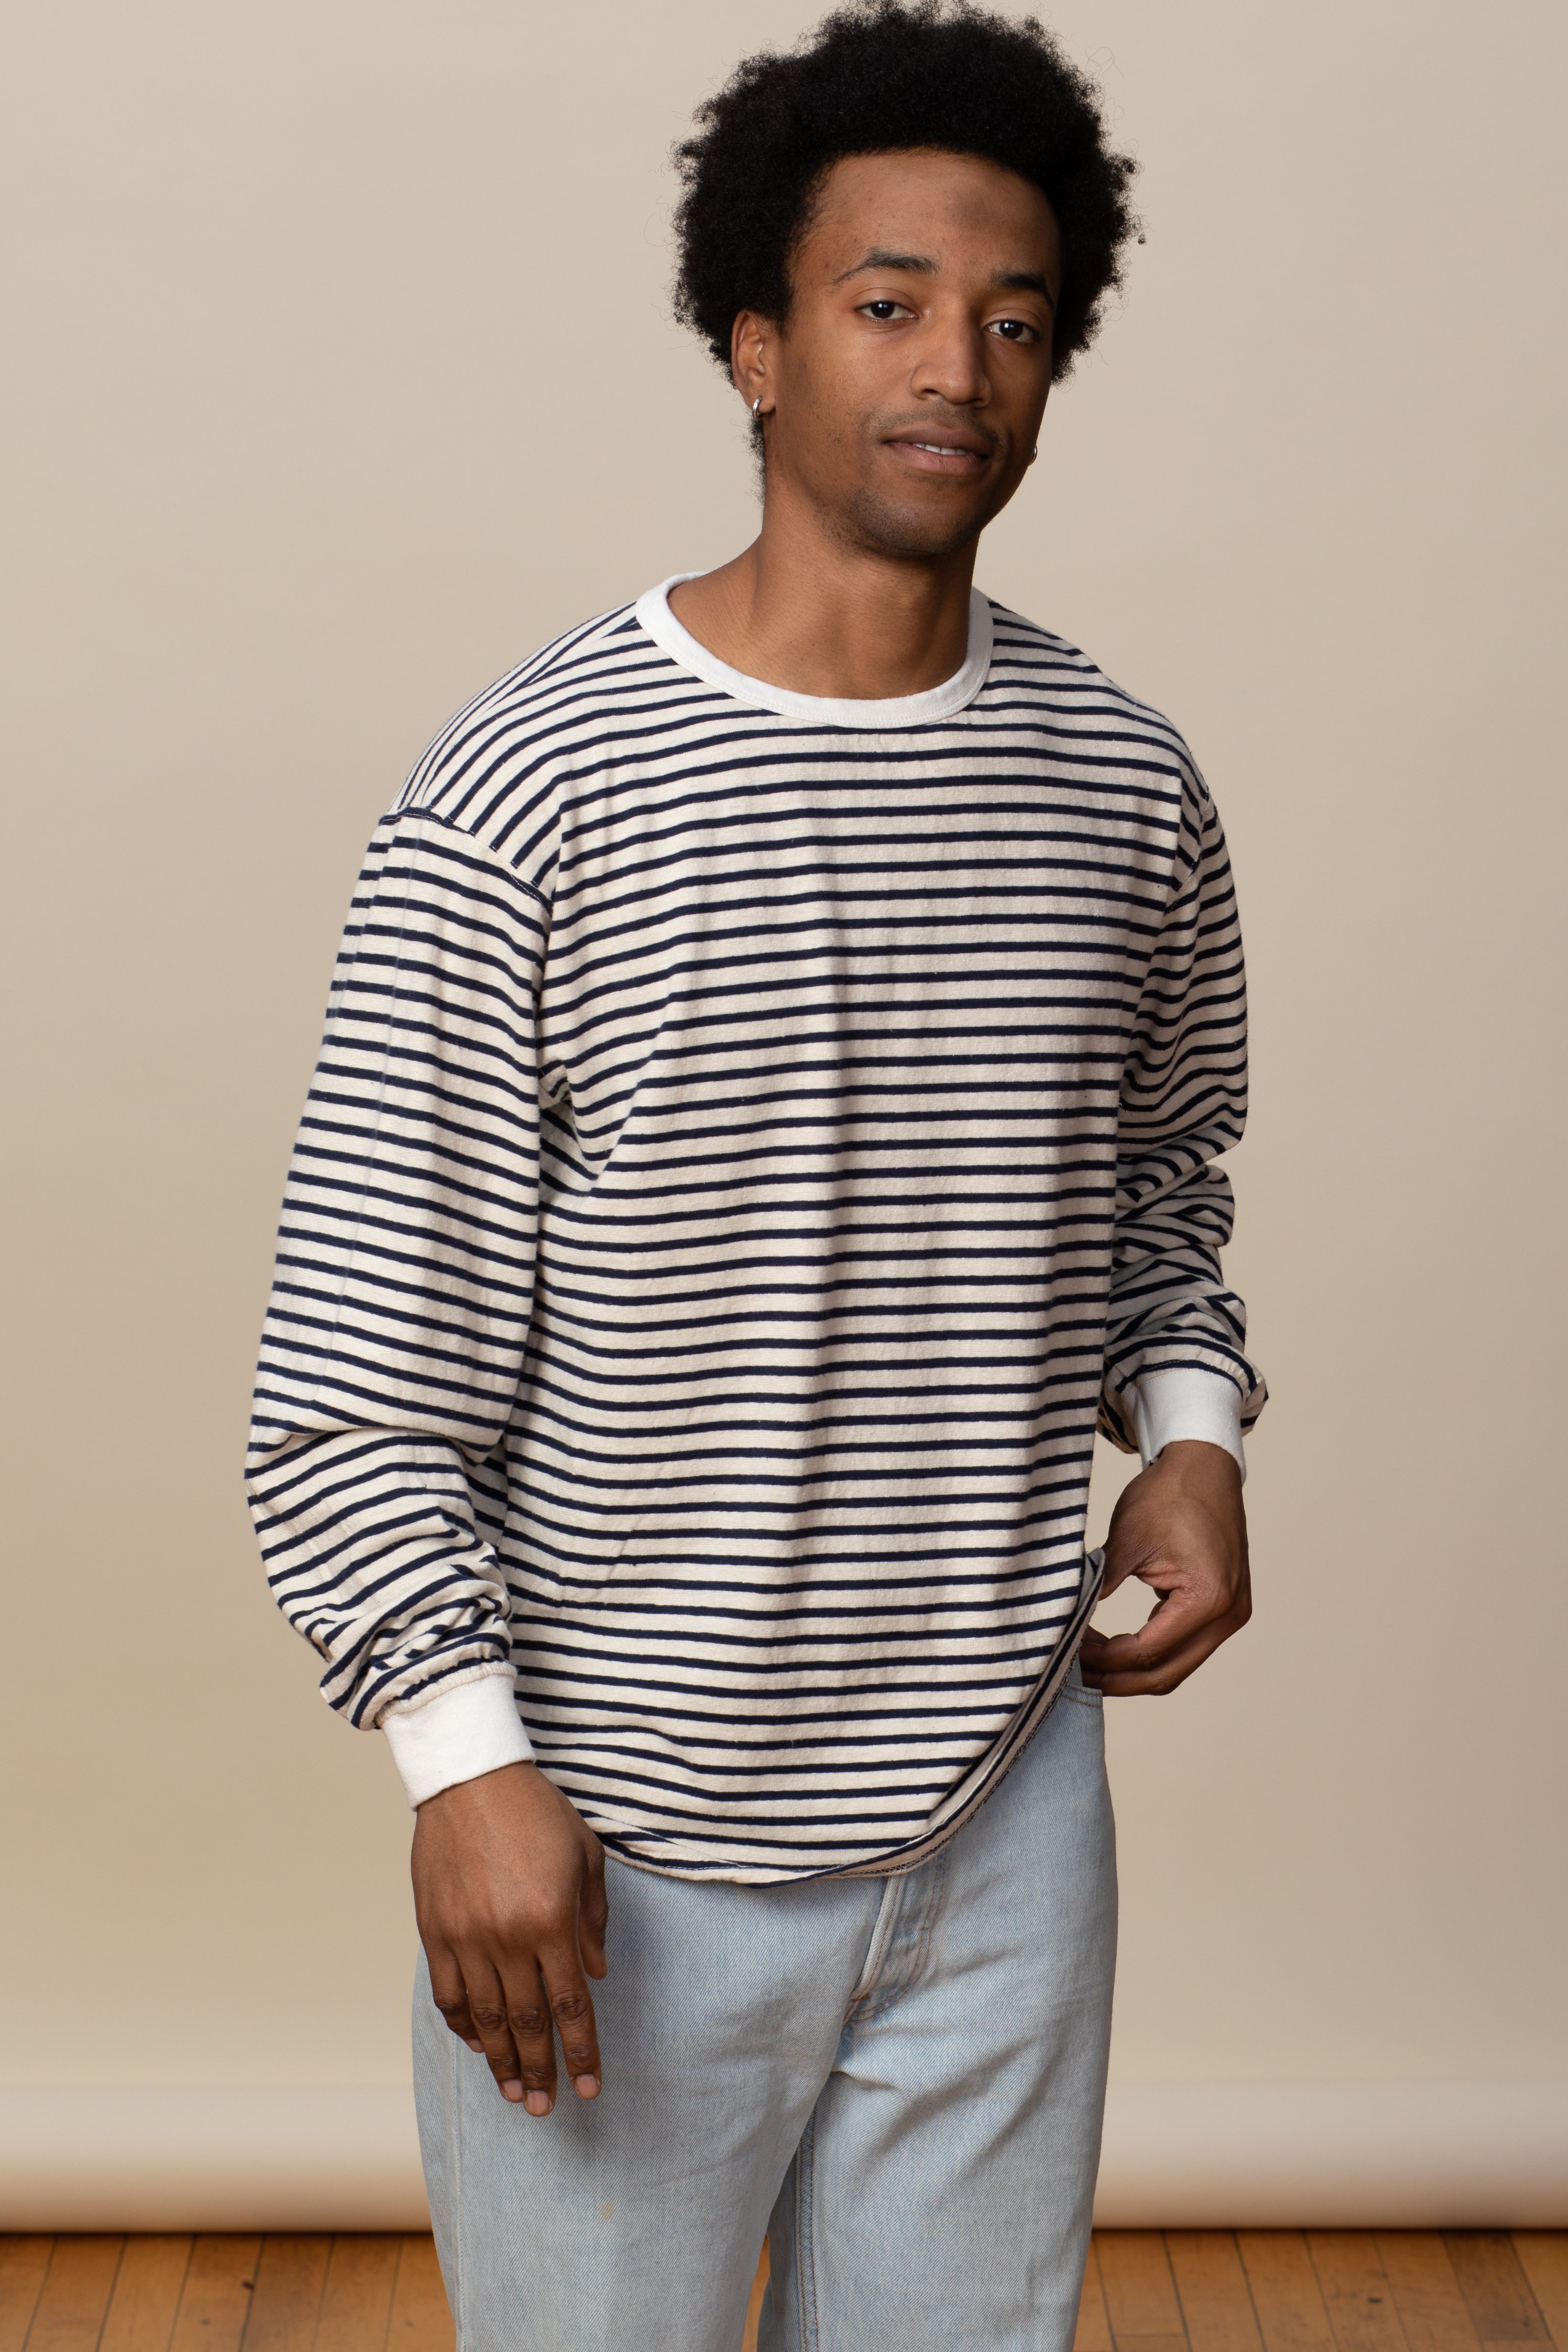 Goodwear Adult Long Sleeve Striped Shirt Hemp Organic Cotton Made